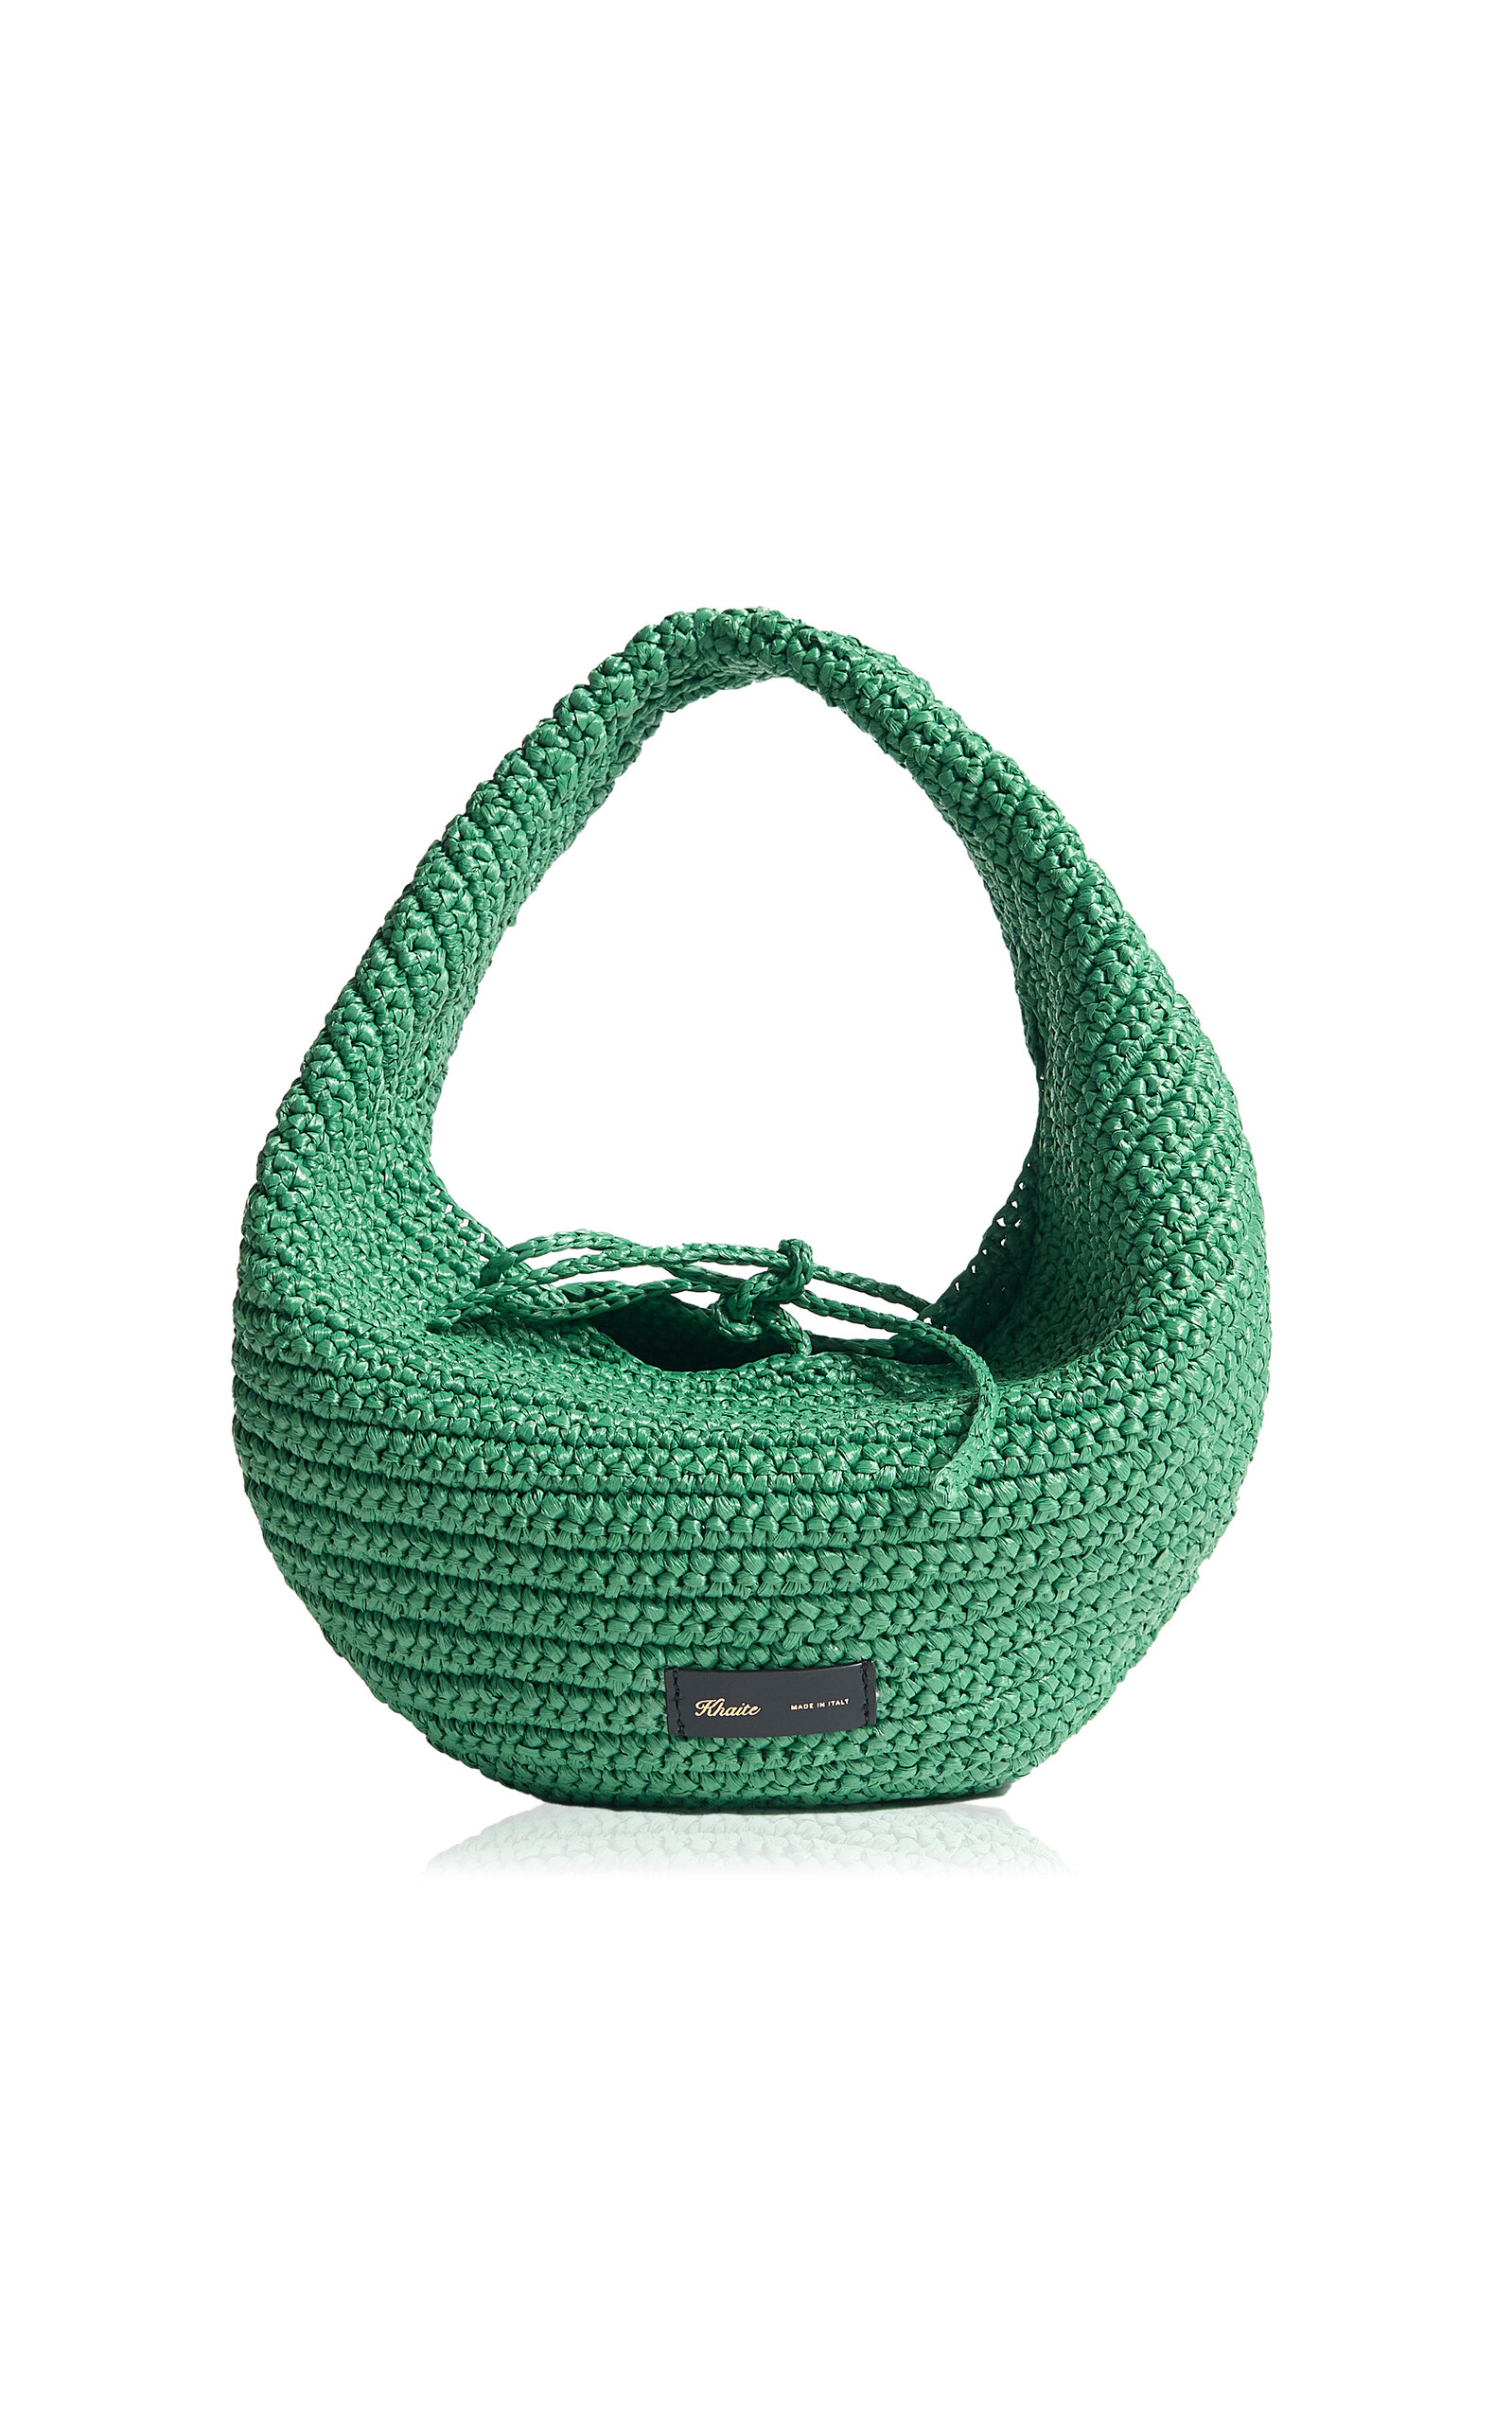 Khaite - Olivia Medium Raffia Hobo Bag - Green - OS - Moda Operandi